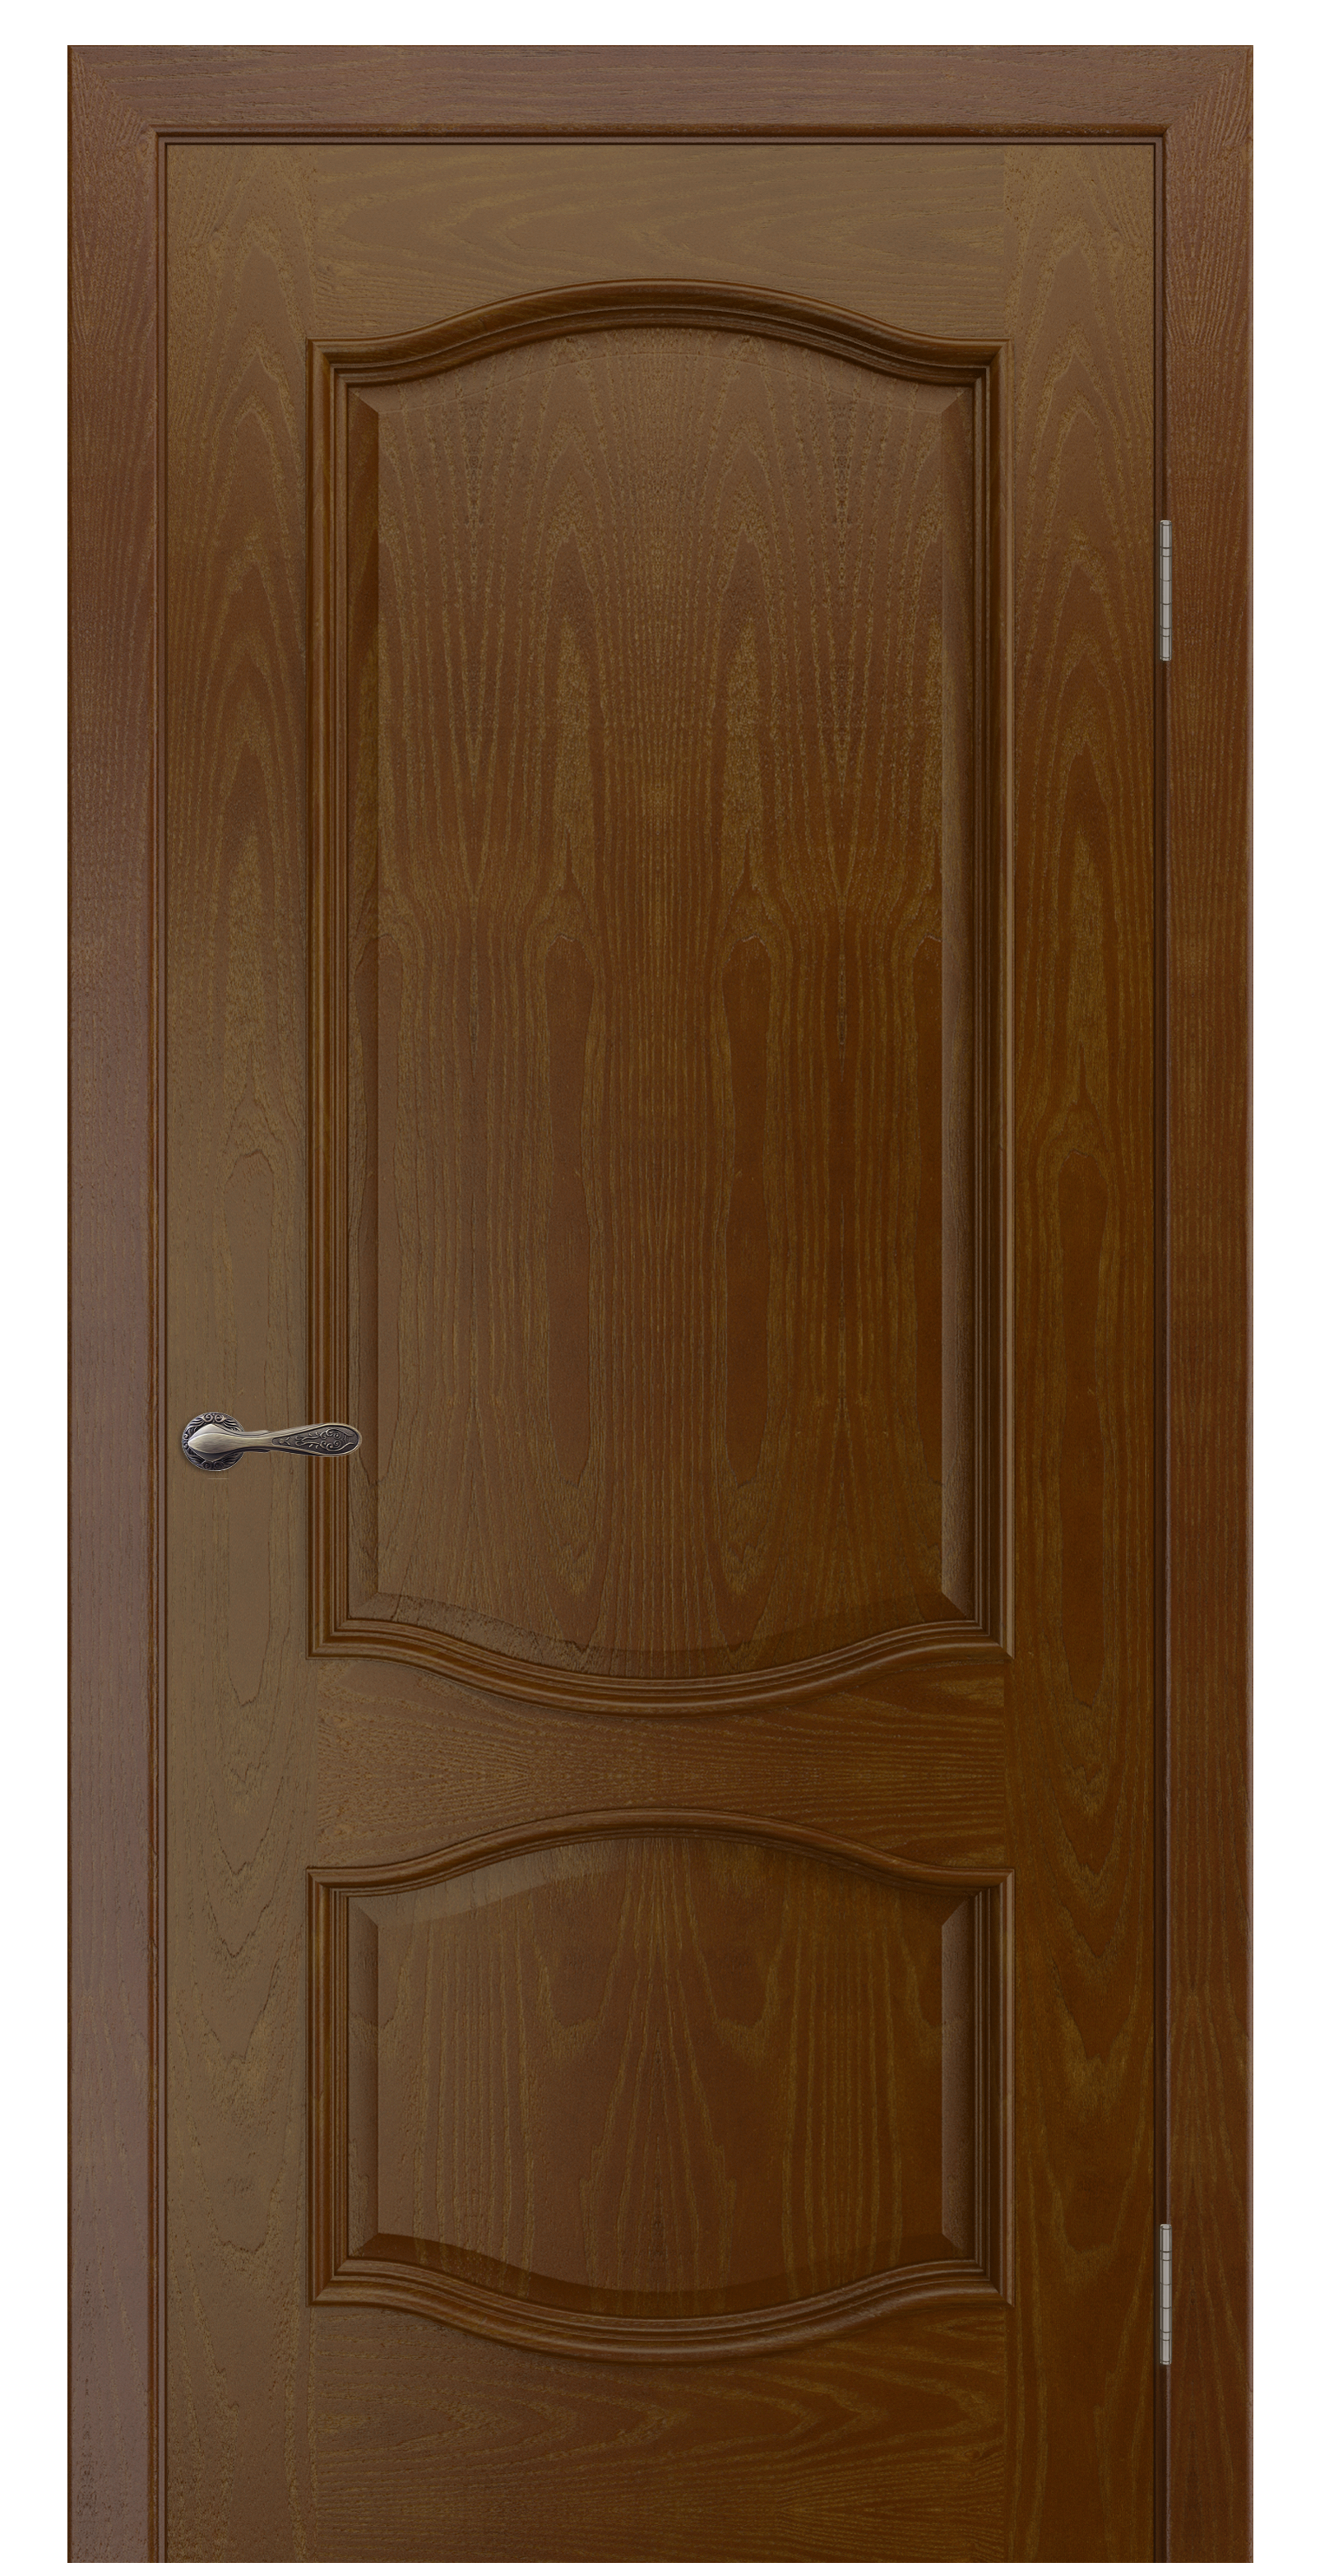 Межкомнатная дверь «София». Вид отделки Тон 30 Cтандартный наличник